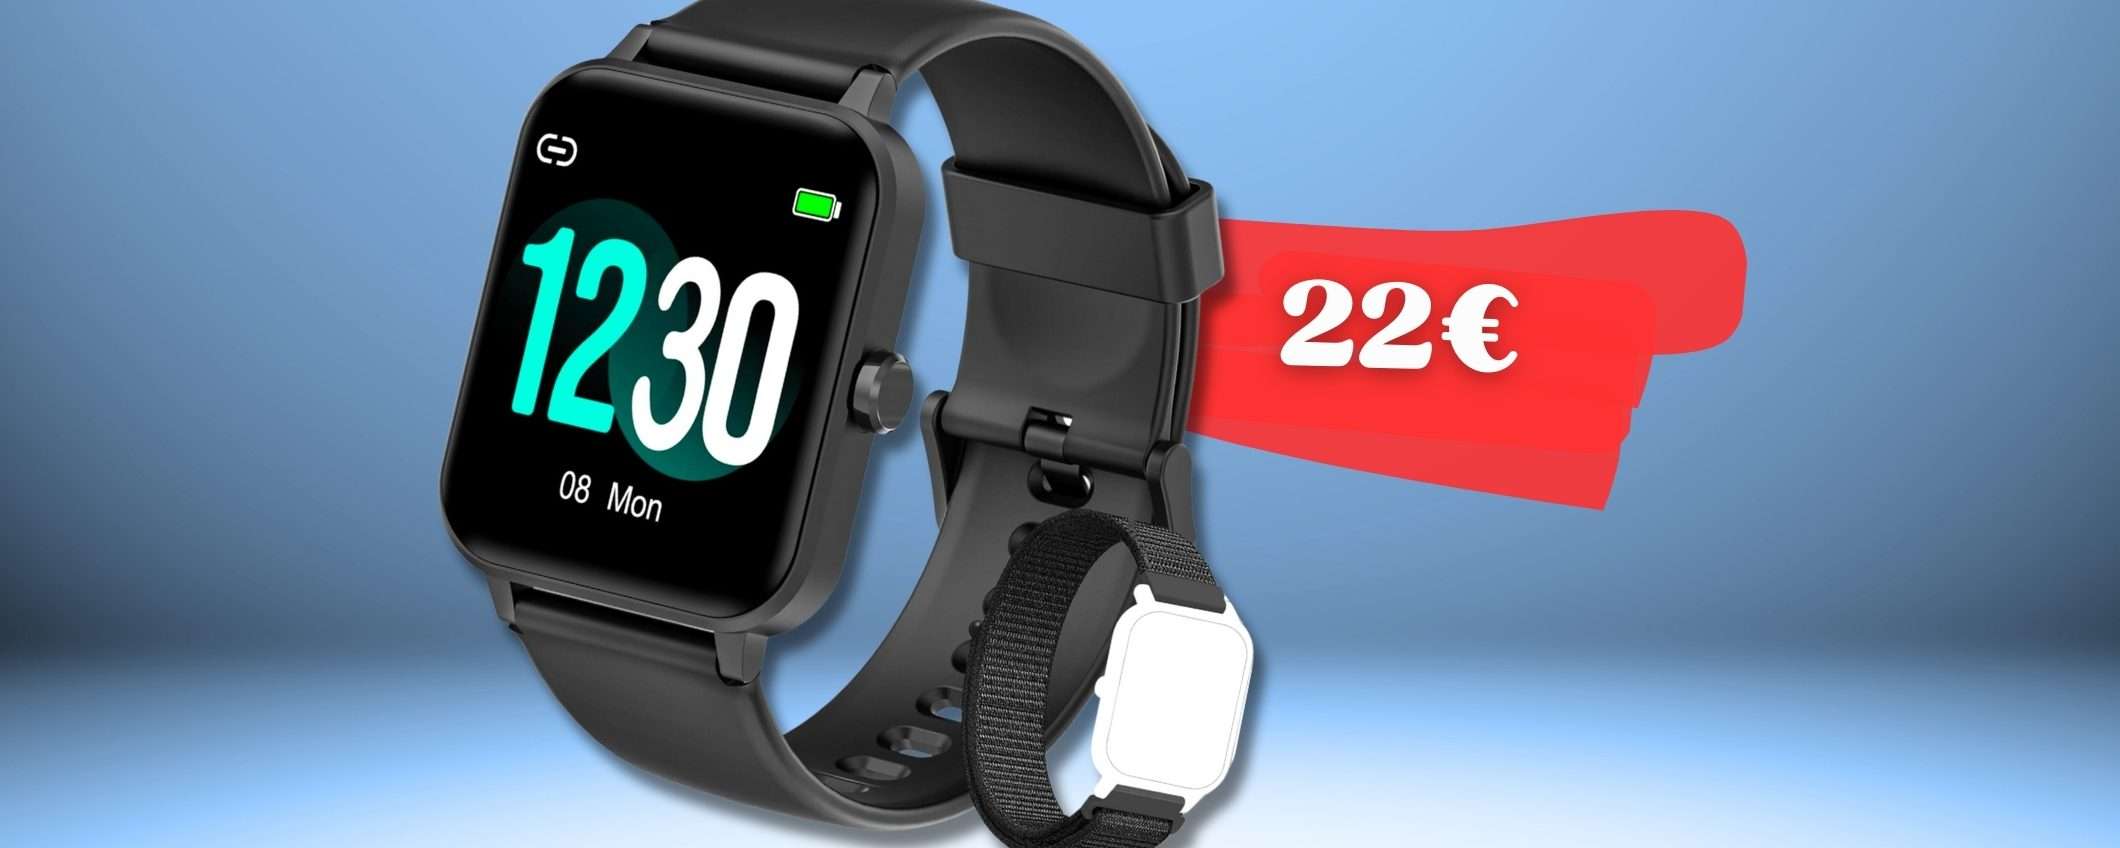 Smartwatch SPAZIALE con social, salute e sport: al tuo polso con 22€